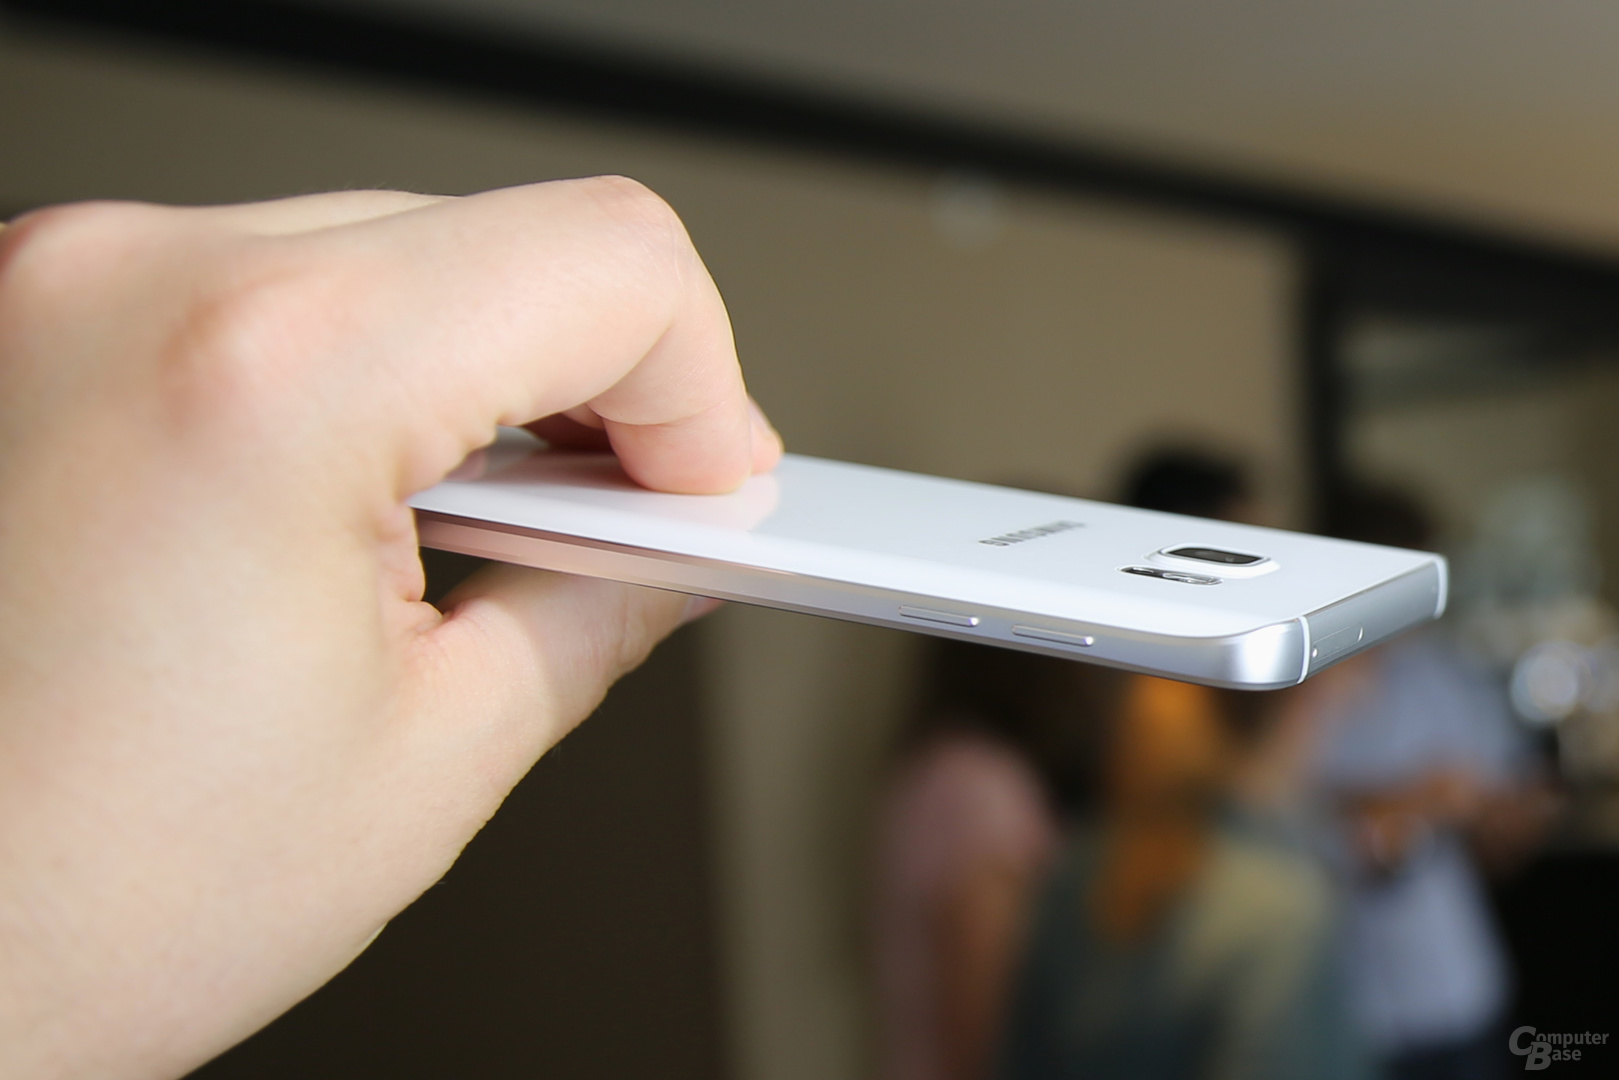 Die Rückseite des Galaxy Note 5 sieht aus wie die Vorderseite des Galaxy S6 edge+